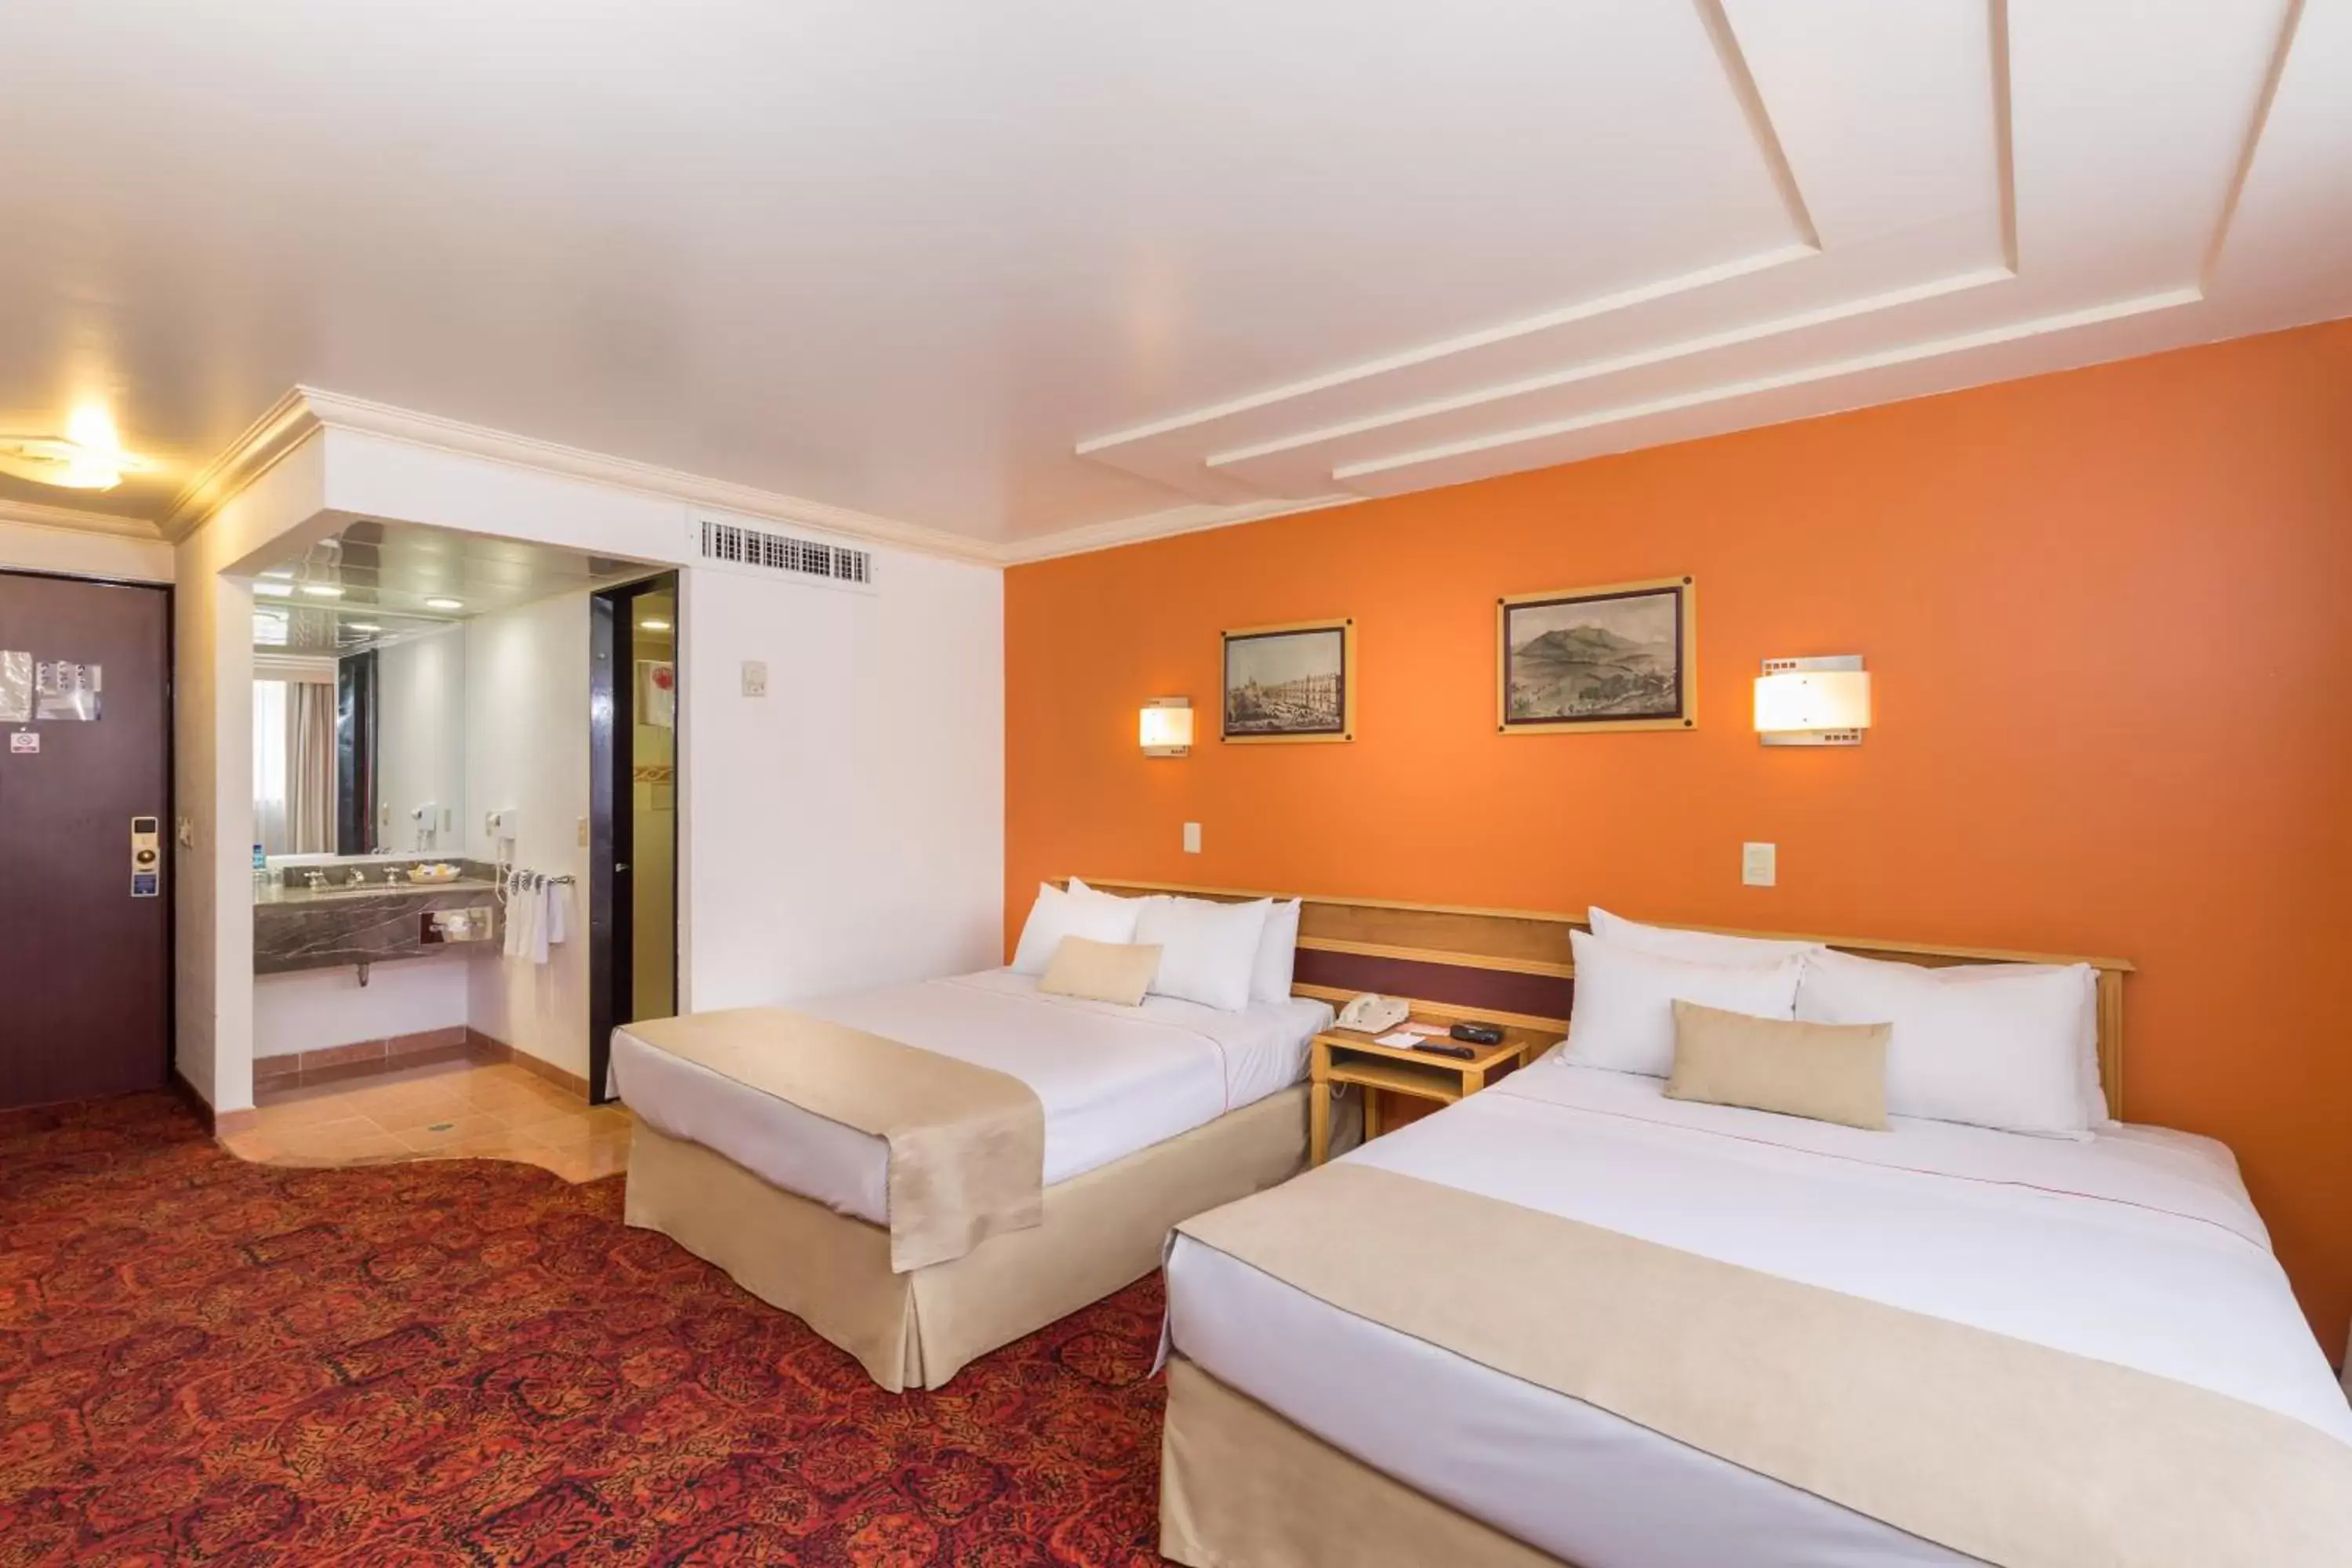 Shower, Room Photo in Hotel Estoril